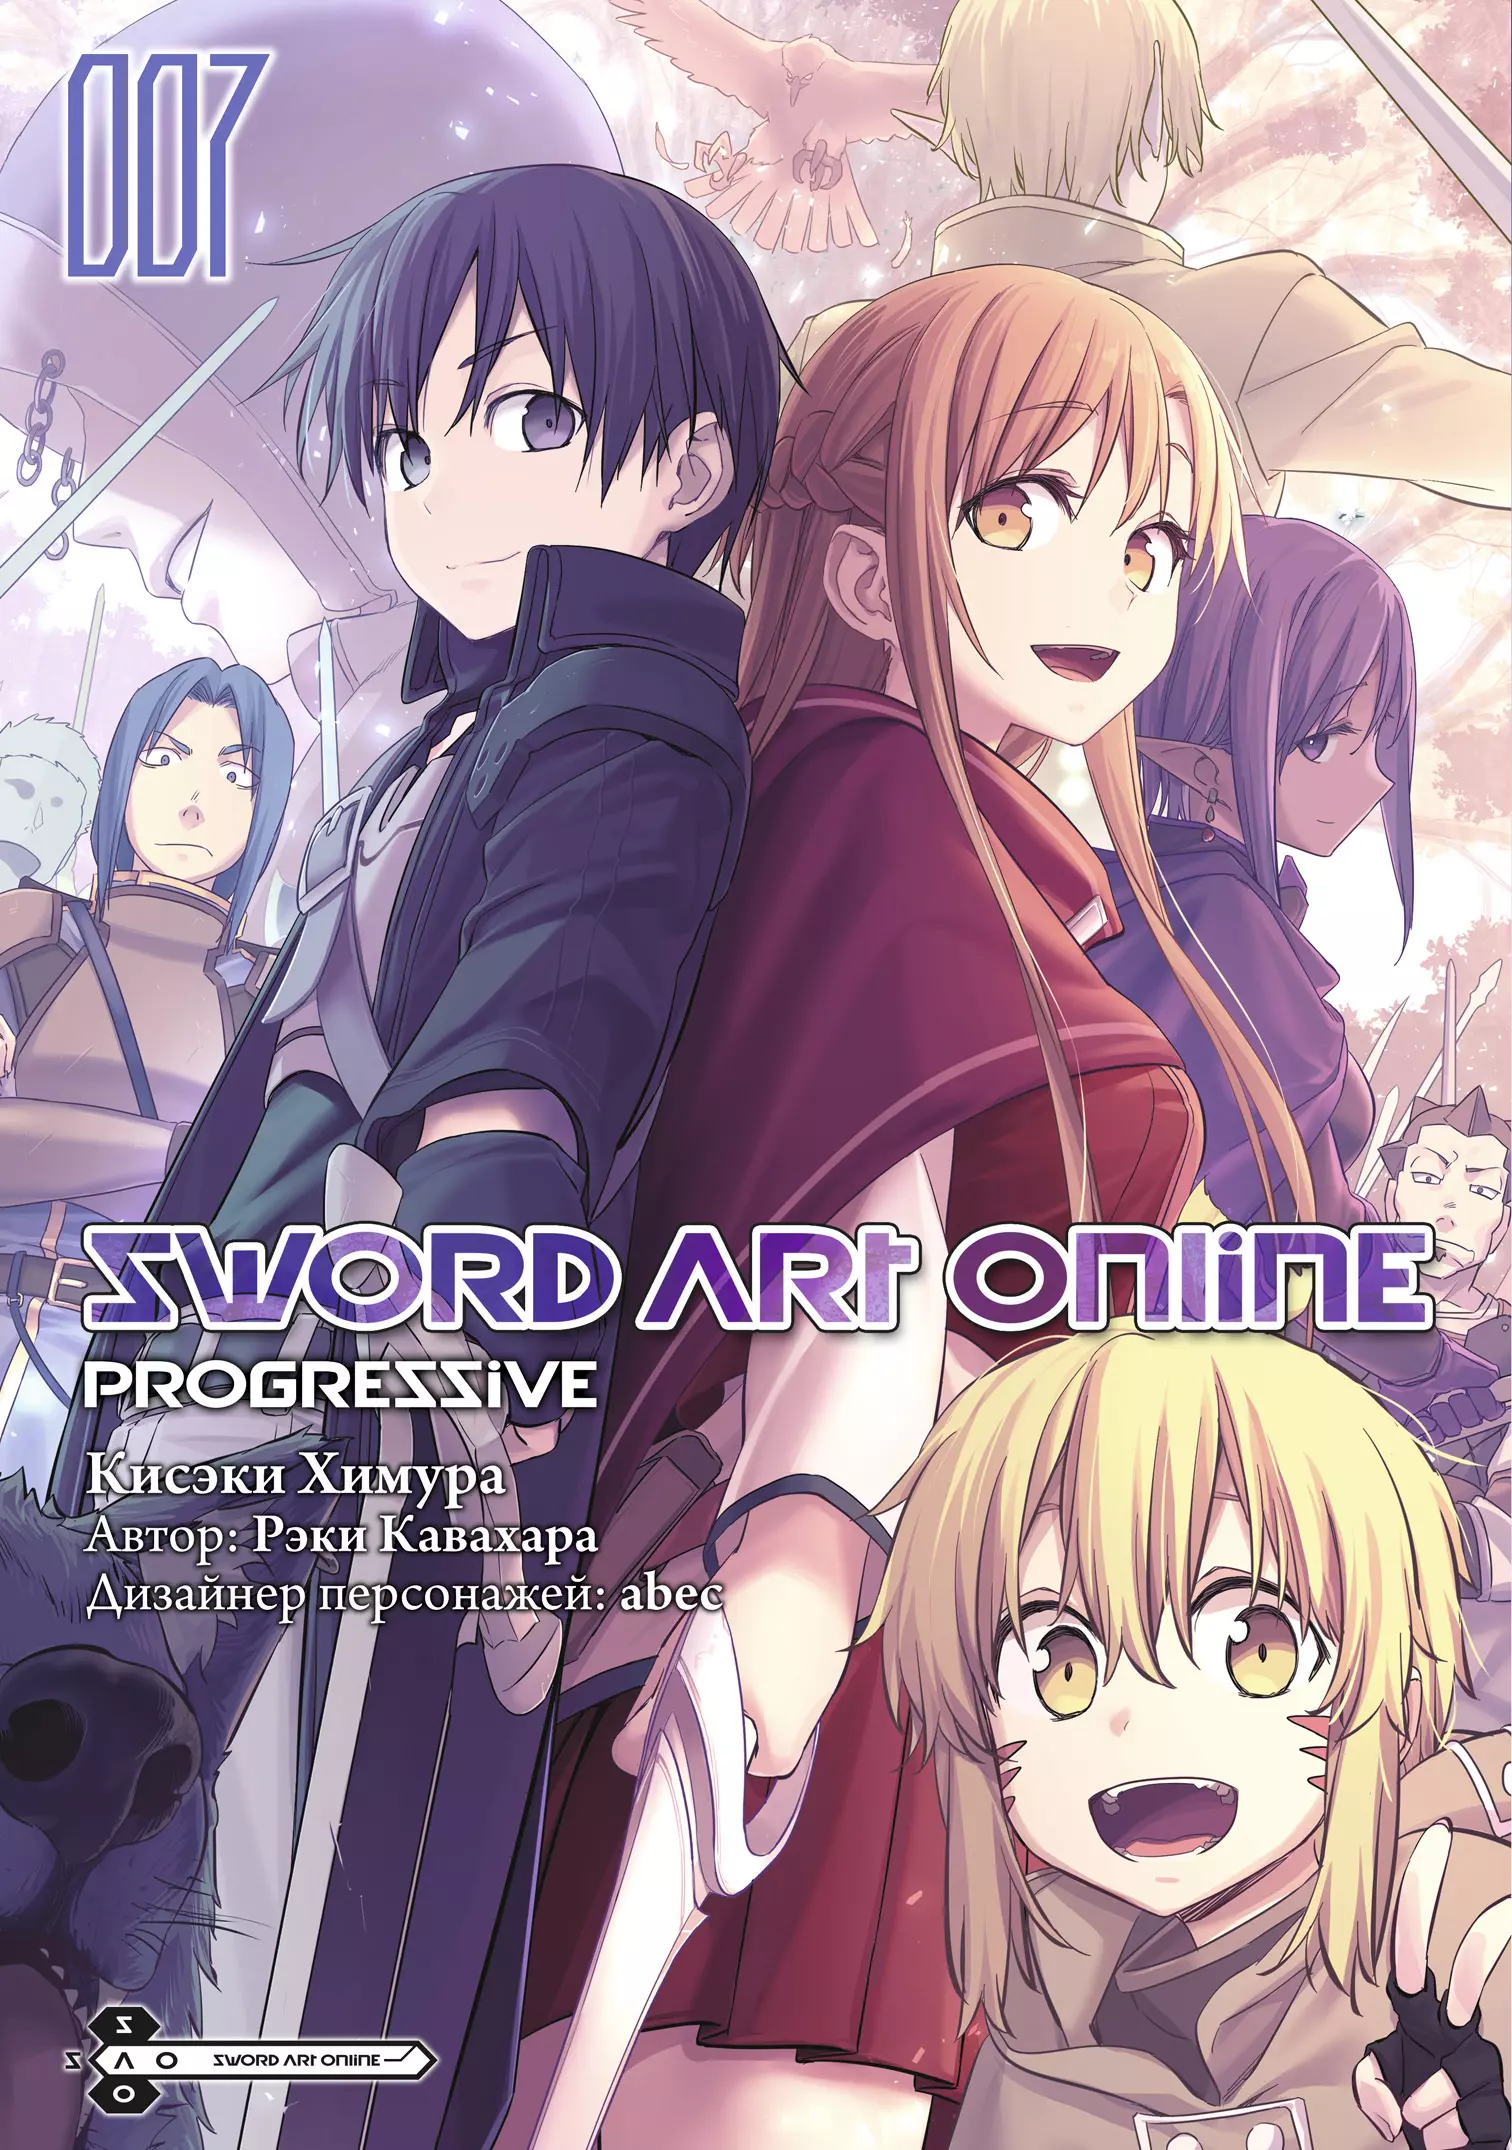 Кавахара Рэки Sword Art Online: Progressive. Том 7 кисэки химура рэки кавахара sword art online progressive том 3